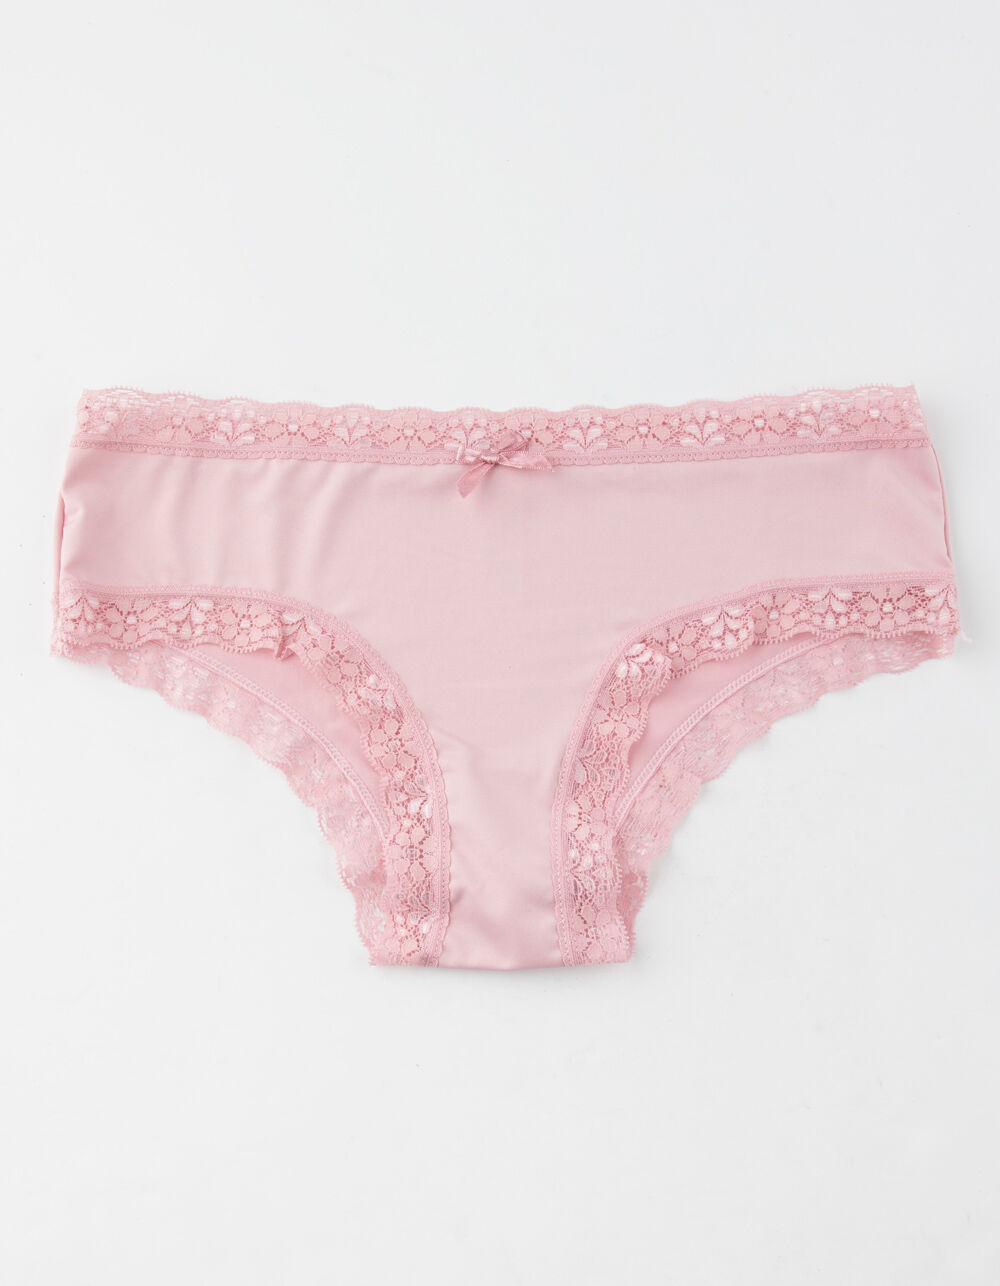 FULL TILT Lace Trim Pink Floral Boyshorts - PINK COMBO | Tillys